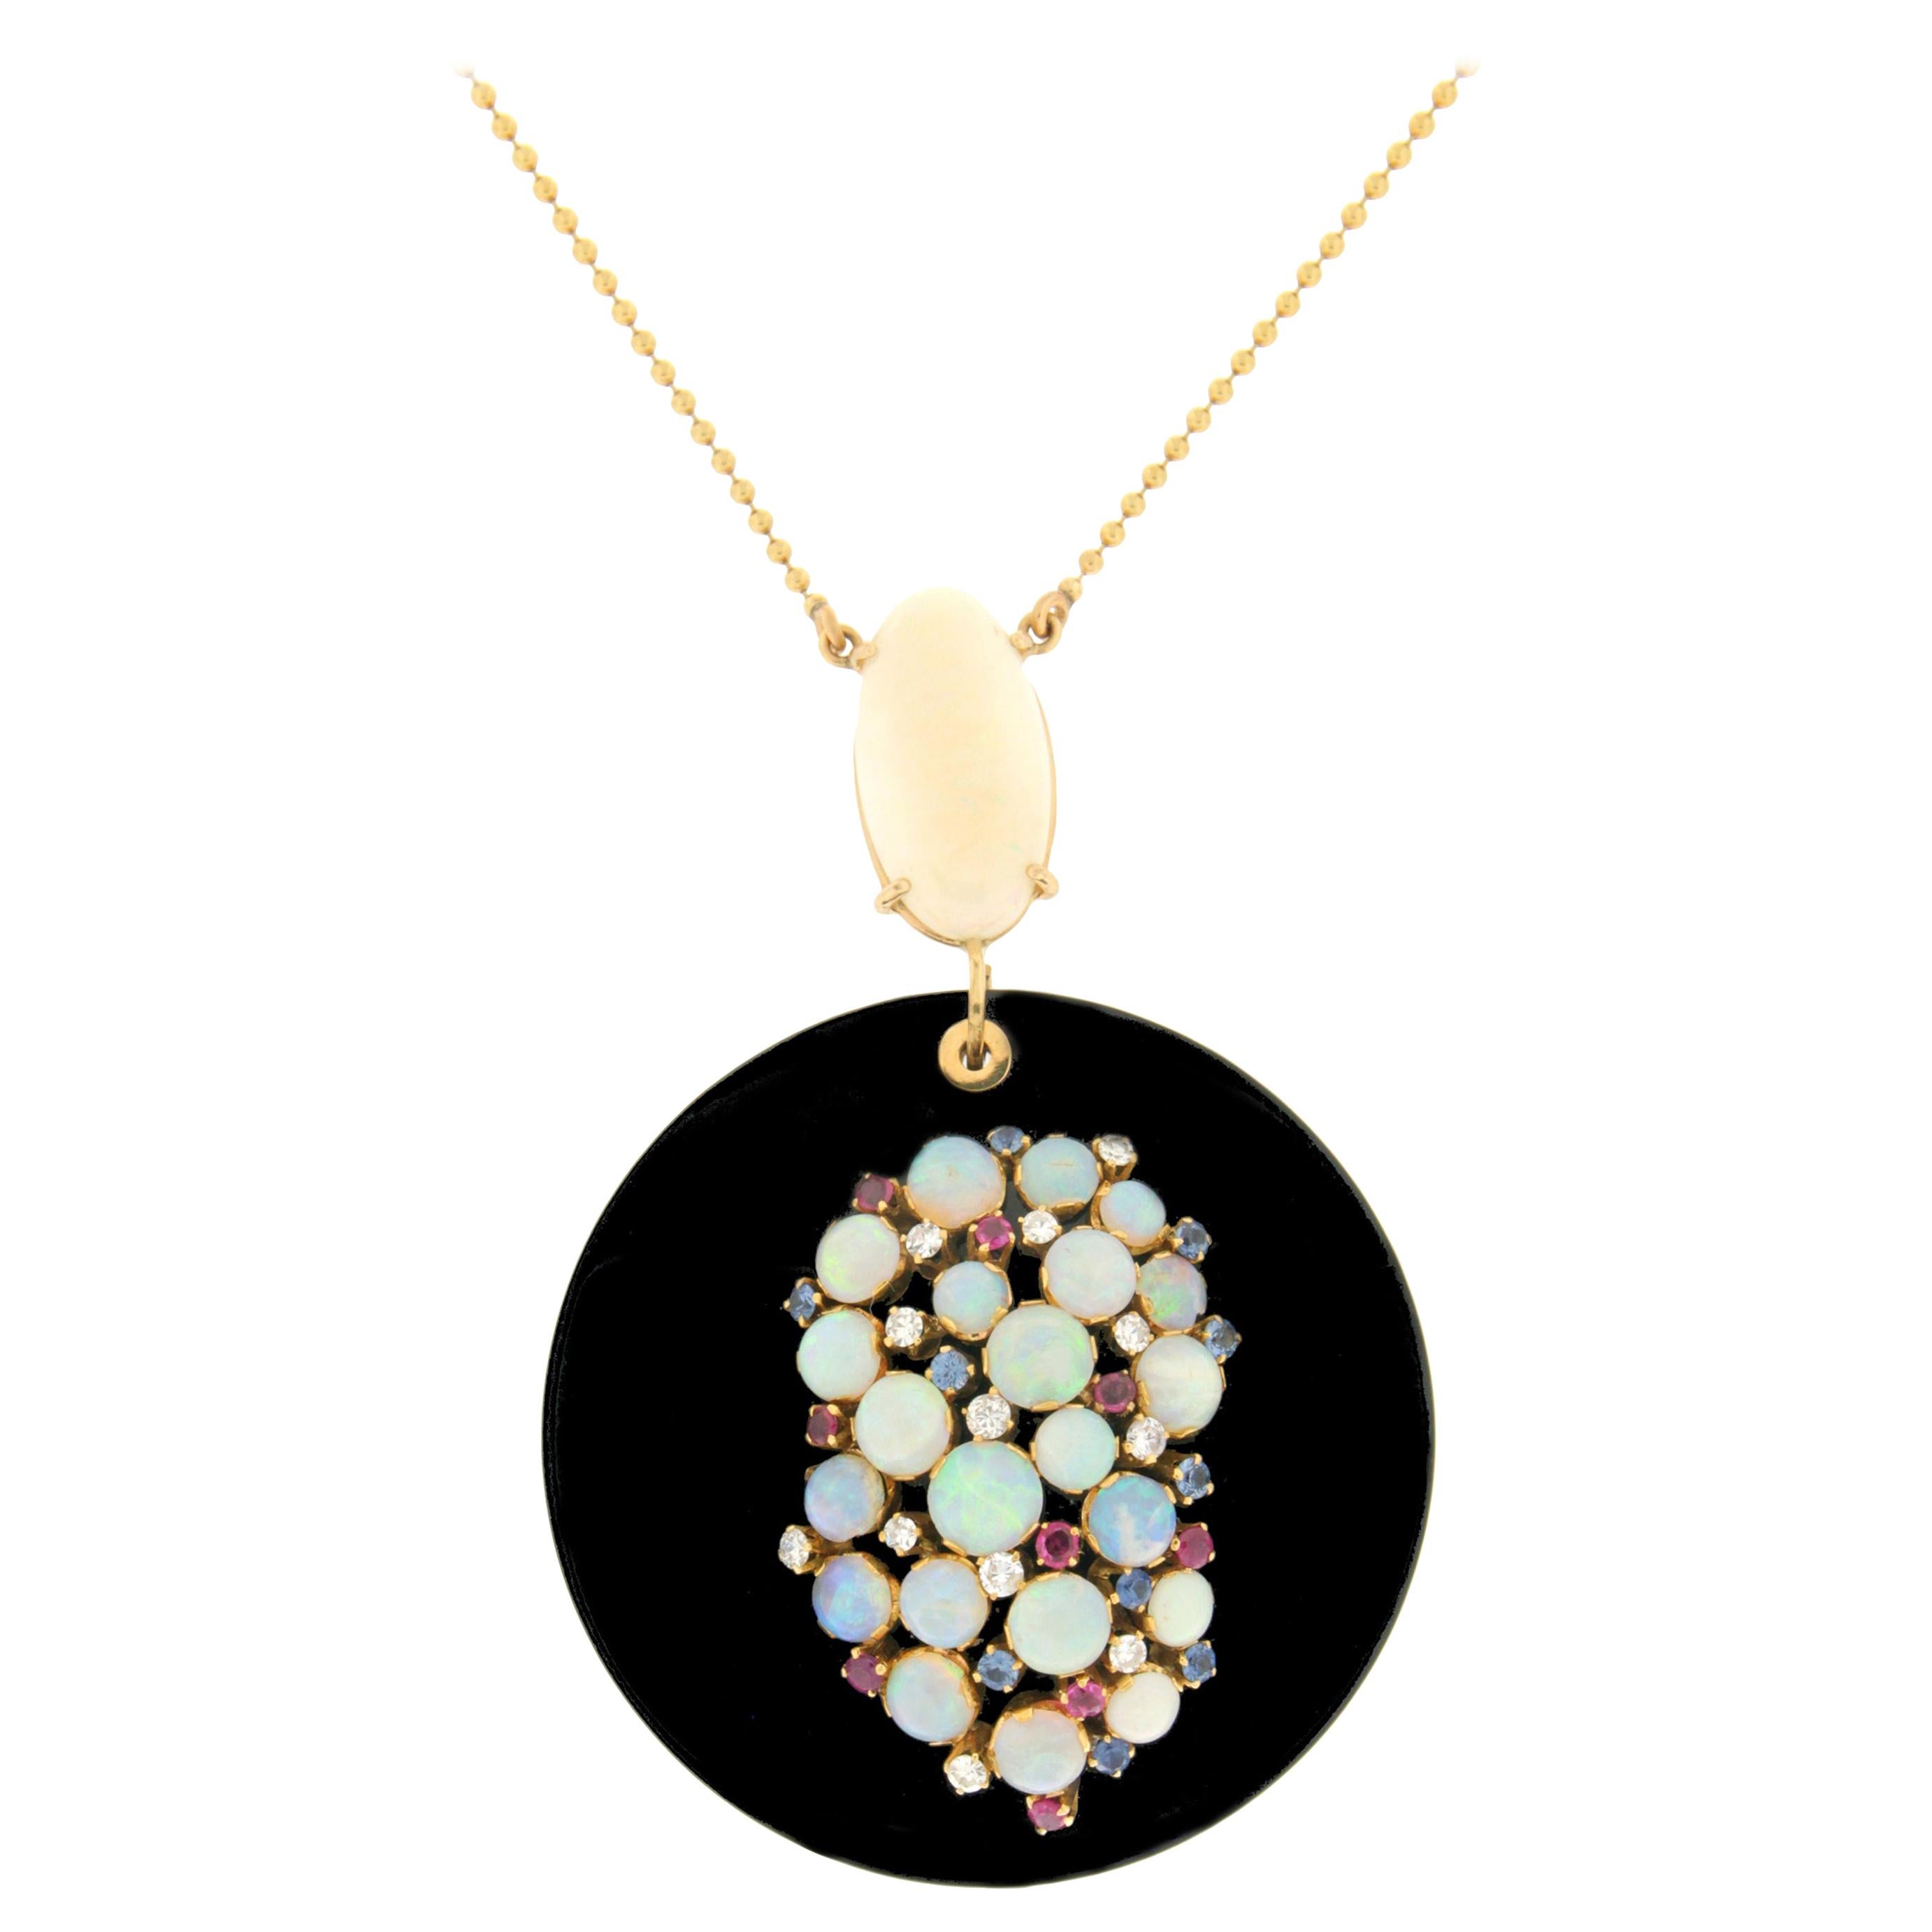 Handgefertigte Onyx-Halskette aus 18 Karat Gelbgold mit Diamanten, Opal, Saphiren und Rubinen